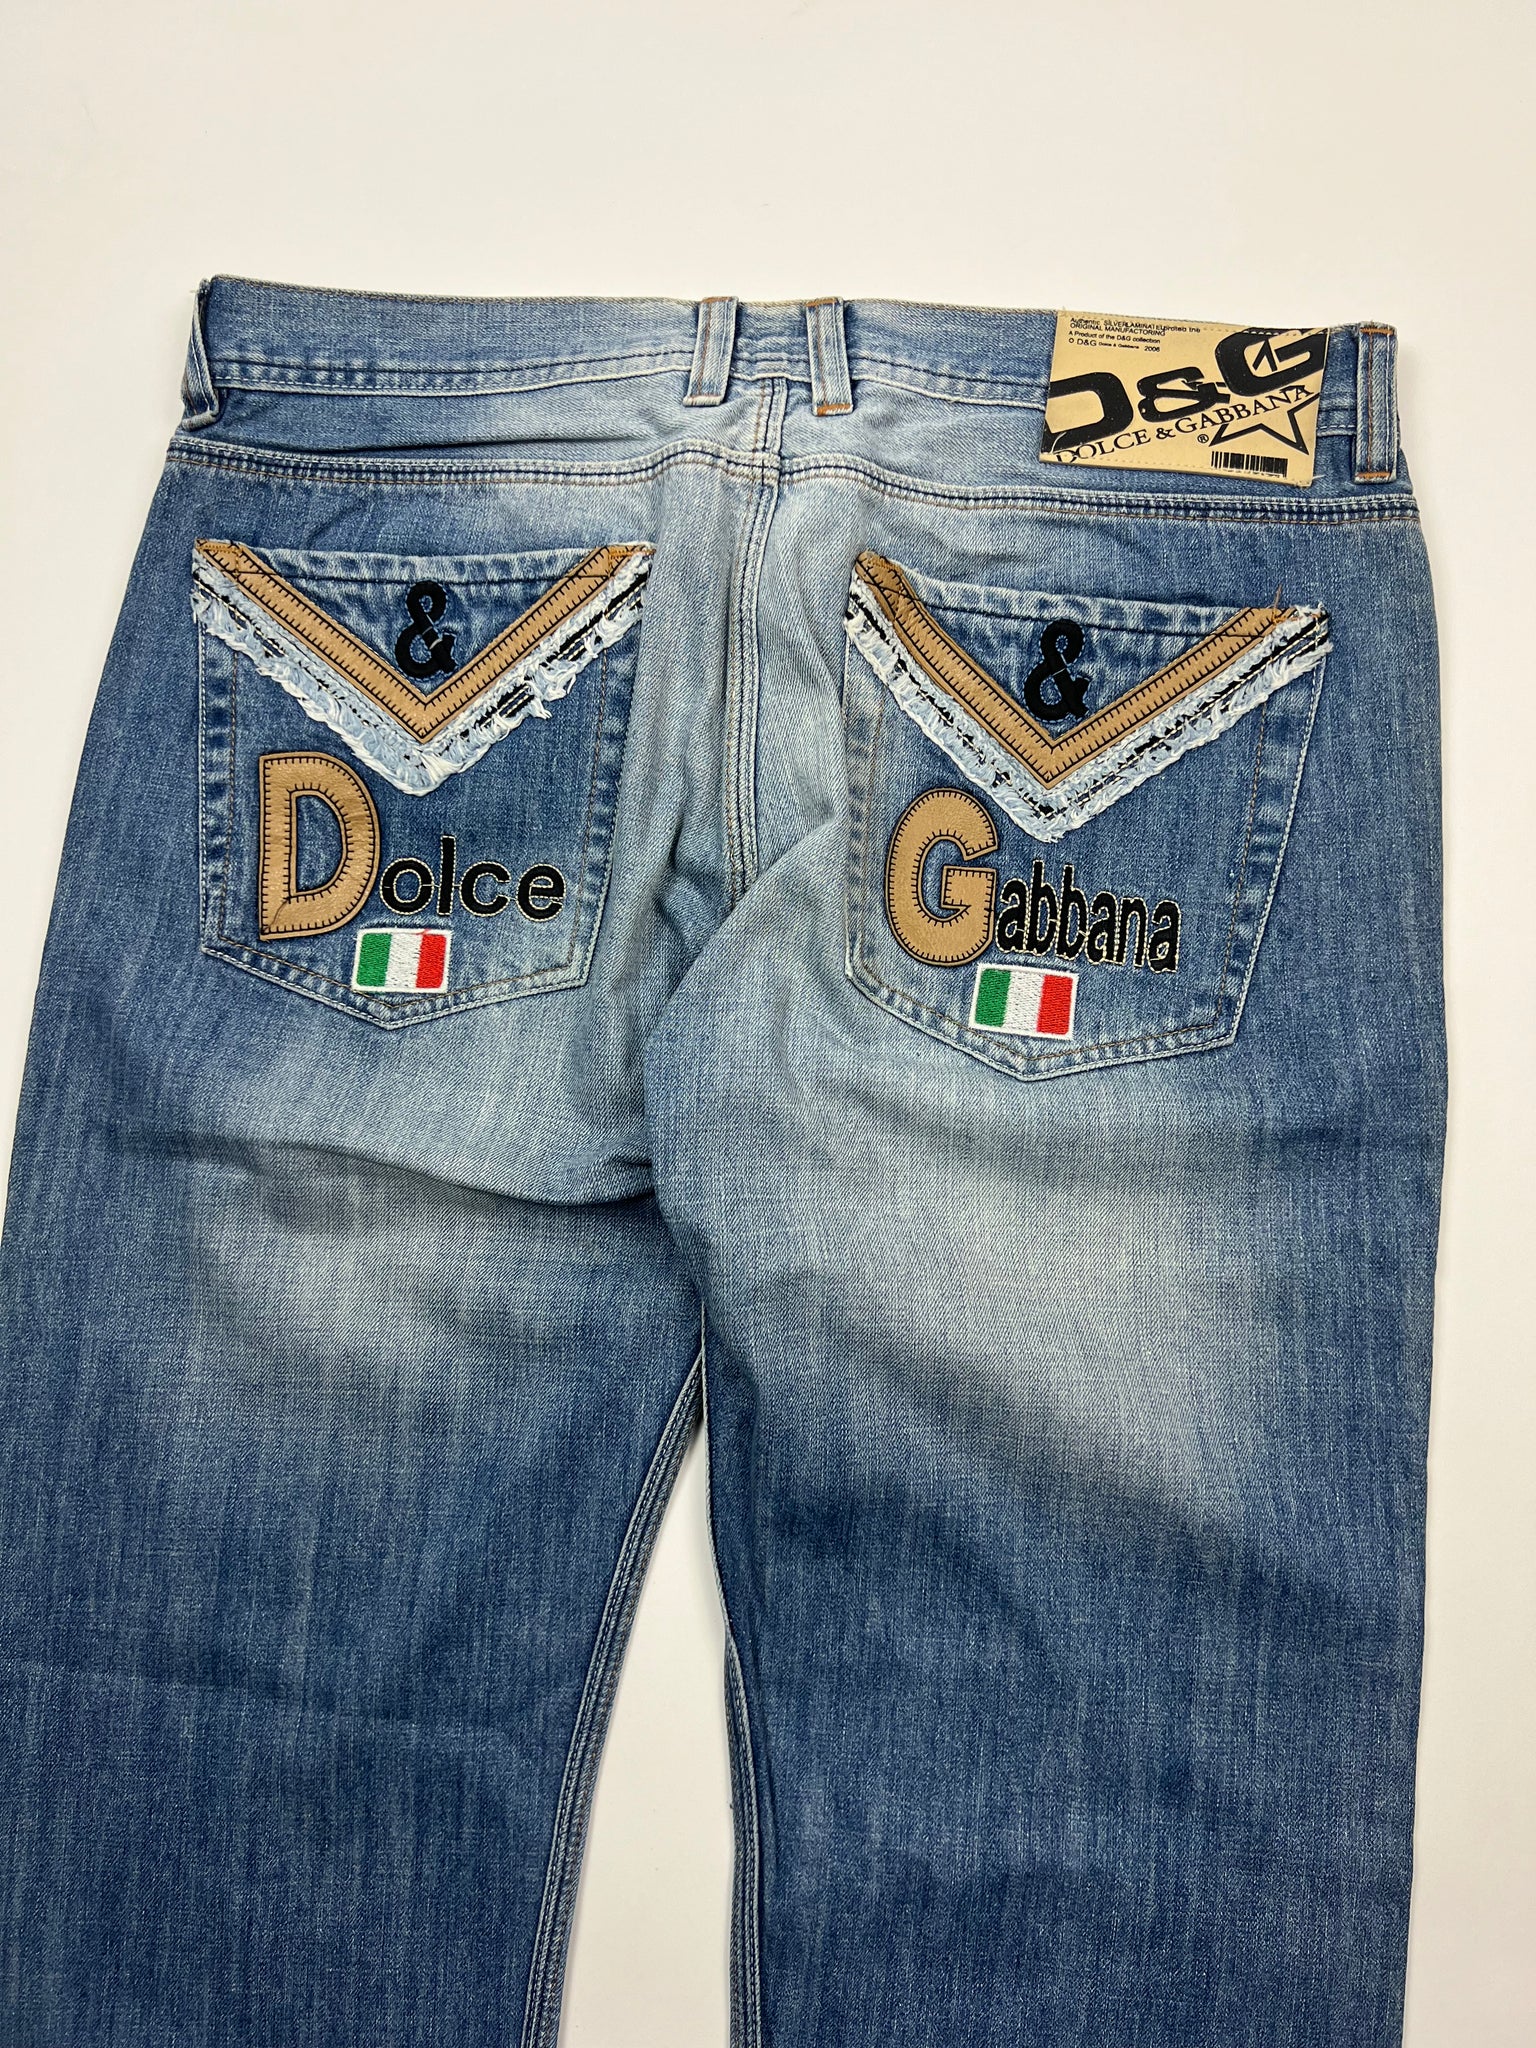 Dolce & Gabbana Jeans (34)